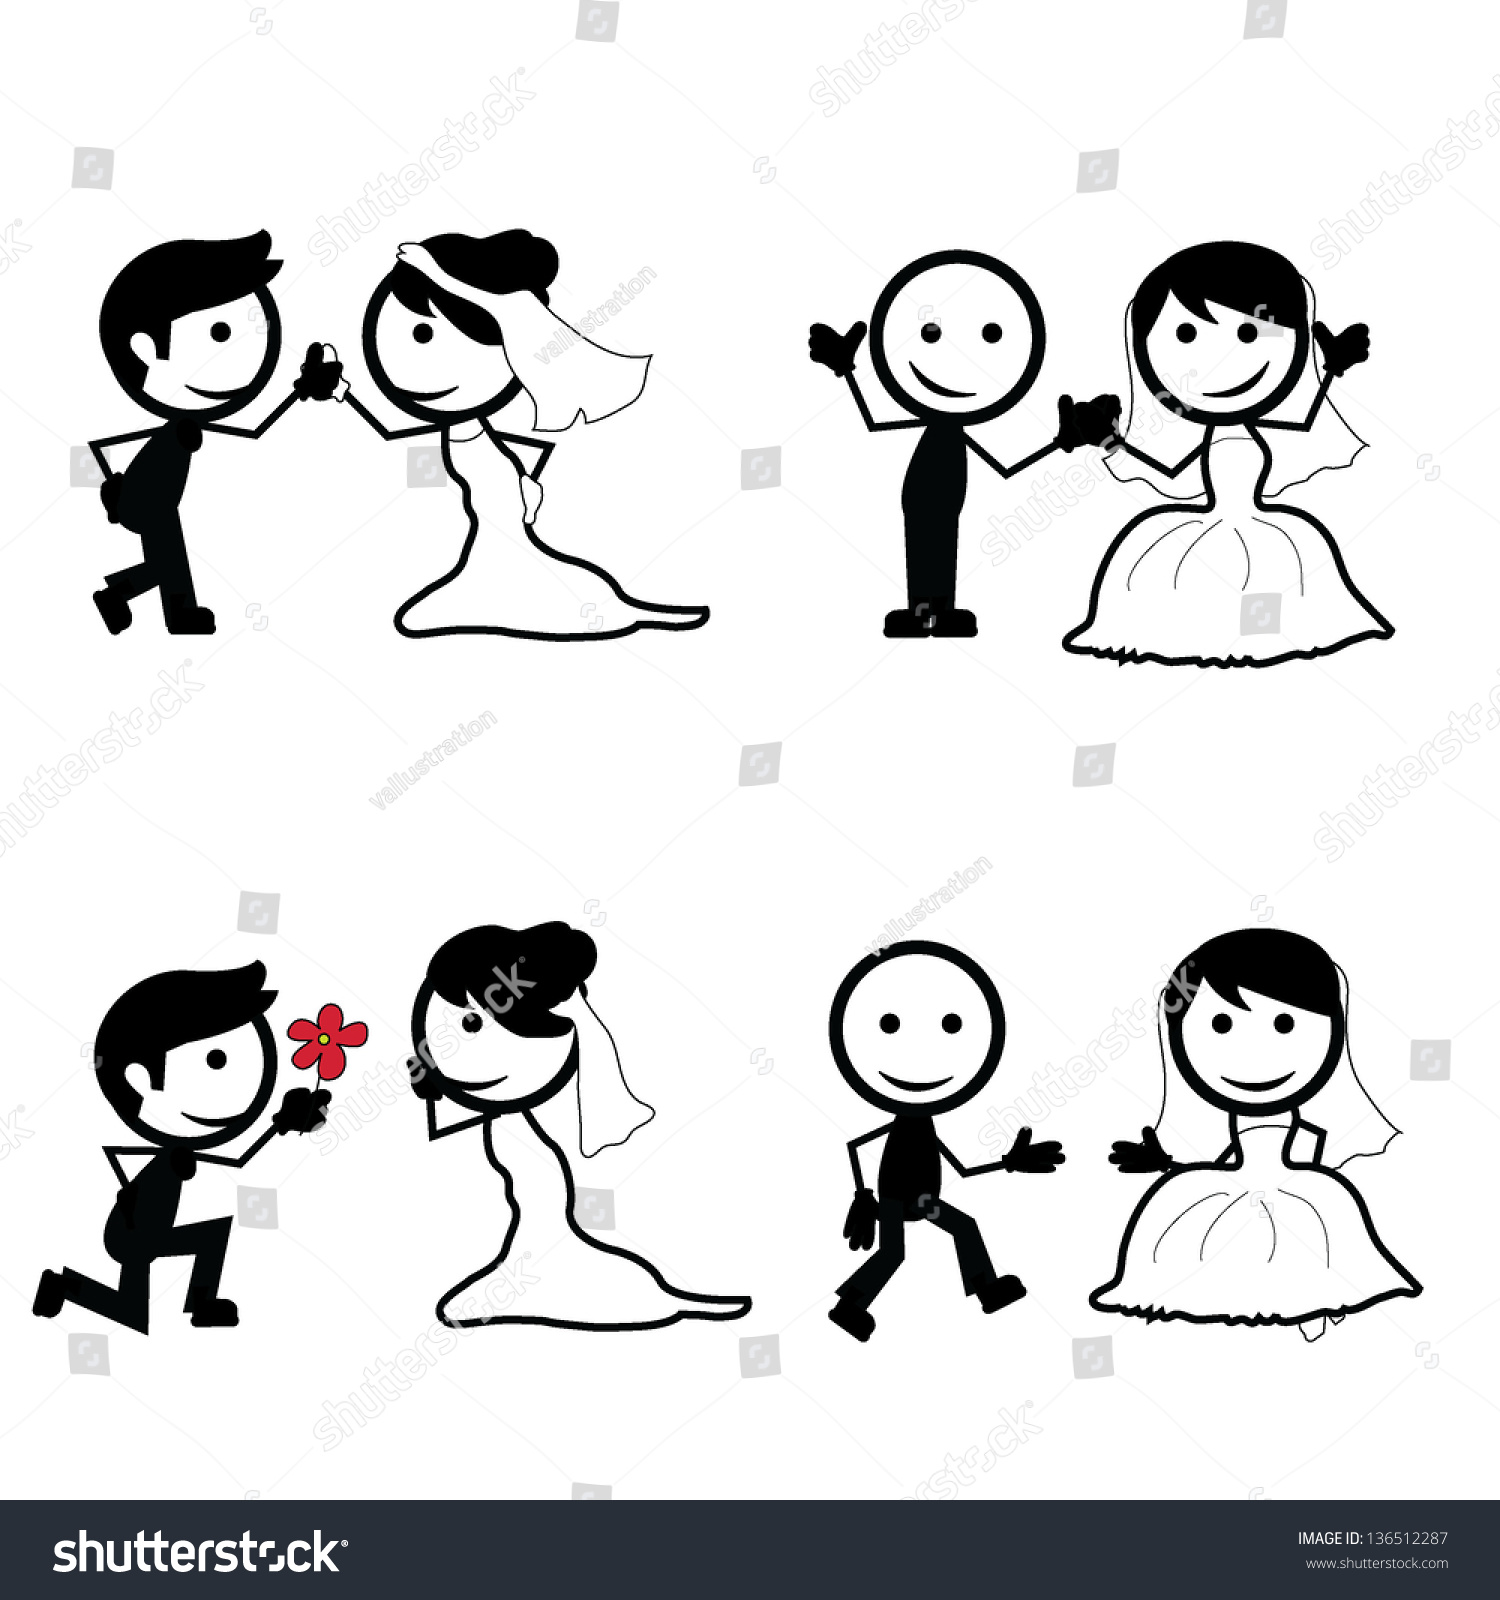 Stick Figure Wedding Couples With Different Pose Illustrazione Vettoriale Darchivio 136512287